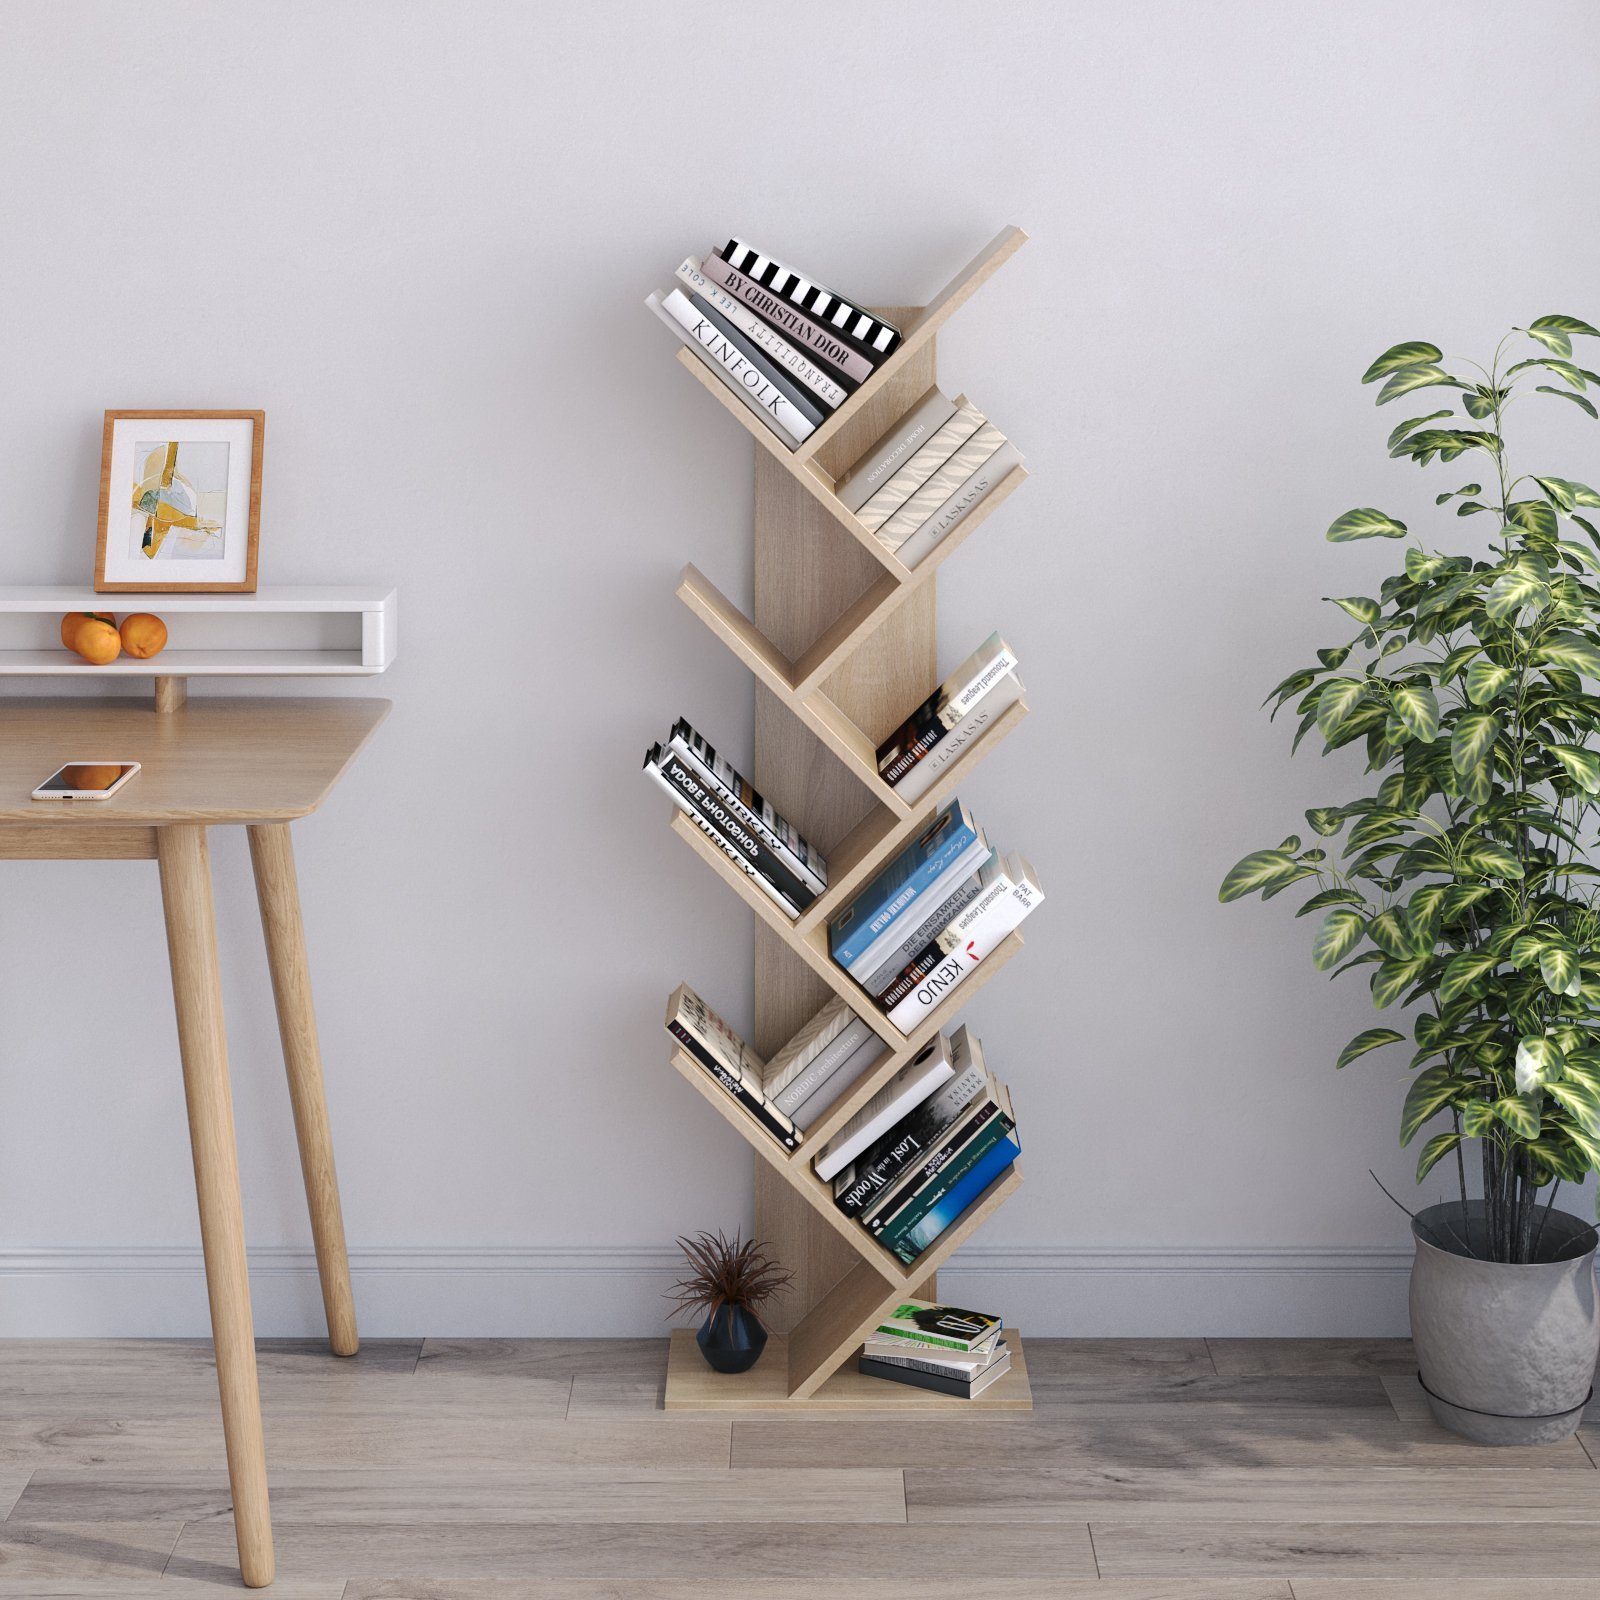 Braun Bücherschrank, aus Mondeer einfaches Design und exquisites Bücherregal Holz Baumform lagiges, 9 Platzsparen in Würfelregal